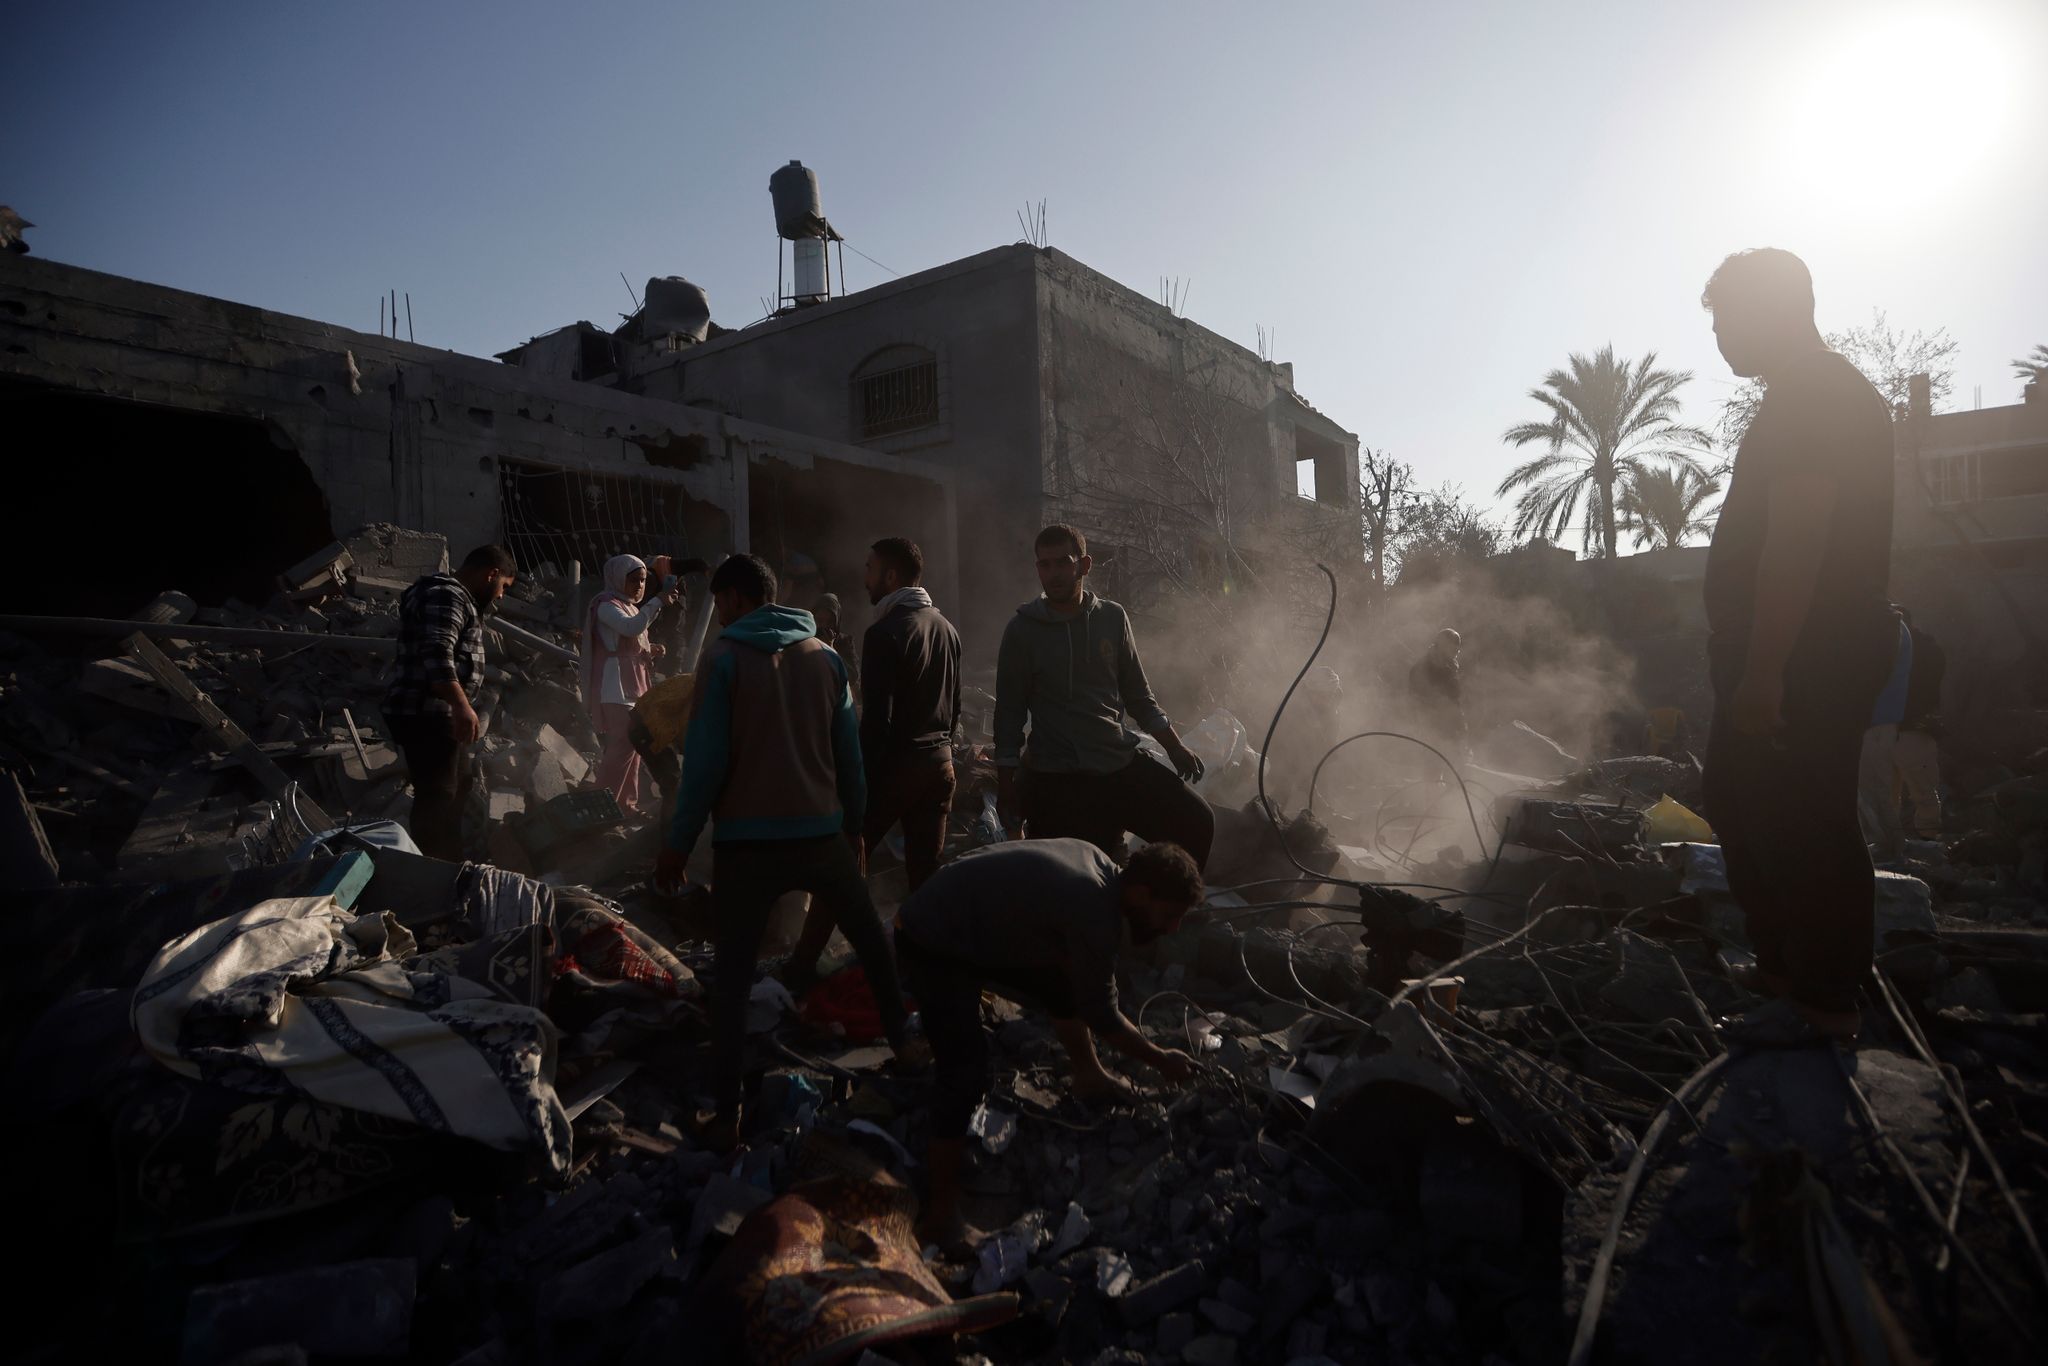 Palästinenser inspizieren die Schäden an einem zerstörten Haus nach israelischen Luftangriffen. Foto: Mohammed Dahman/AP/dpa